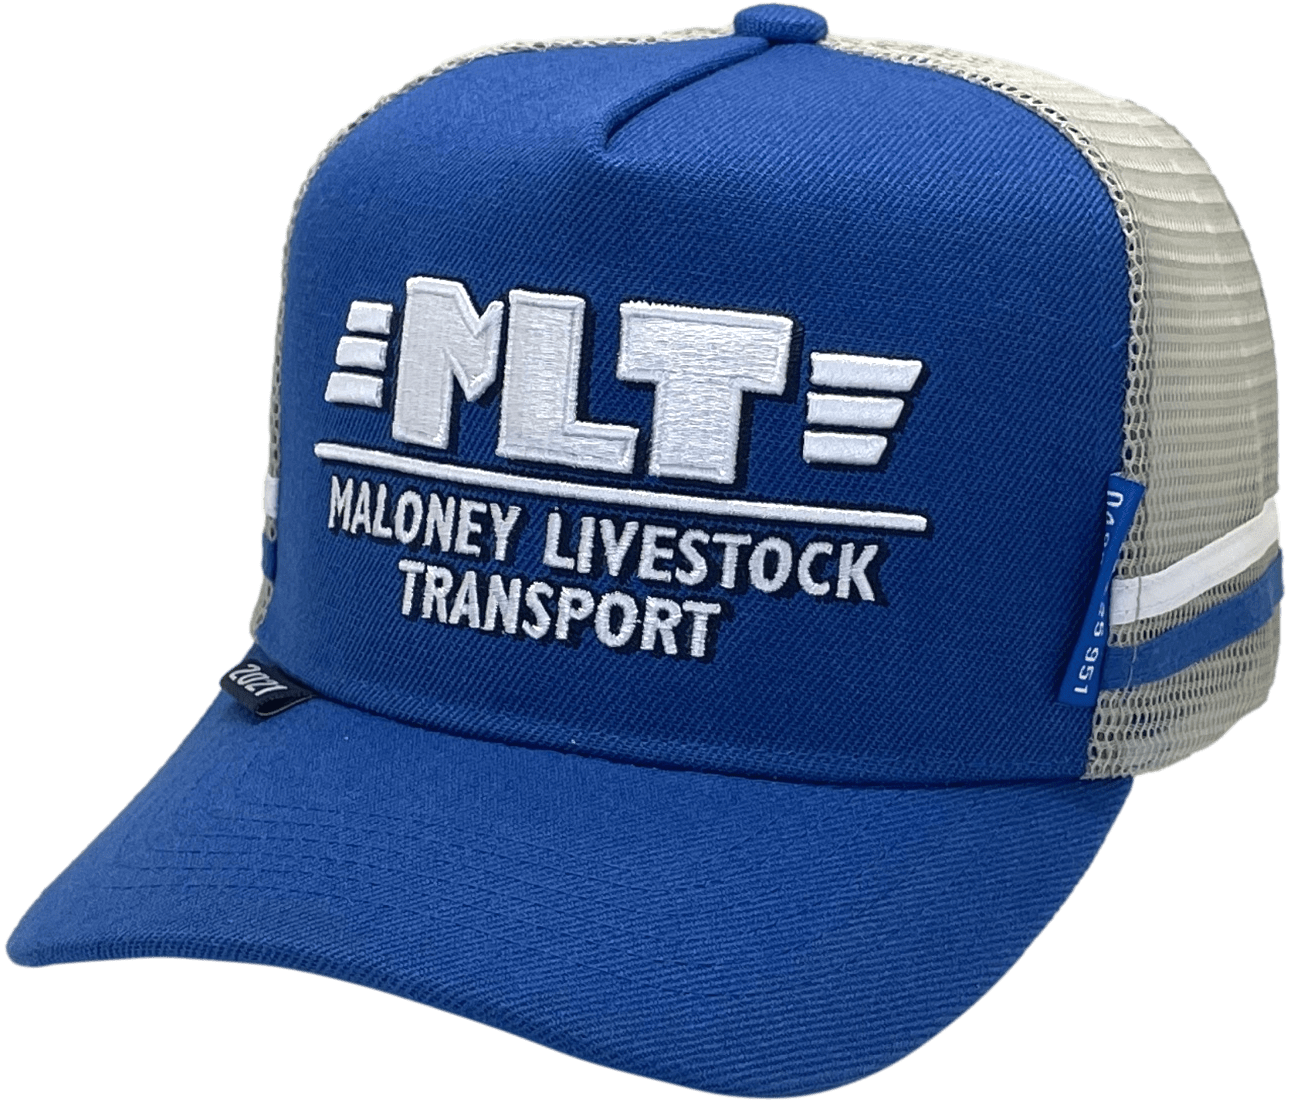 Maloney Livestock Transport HP Midrange Aussie Trucker Hats